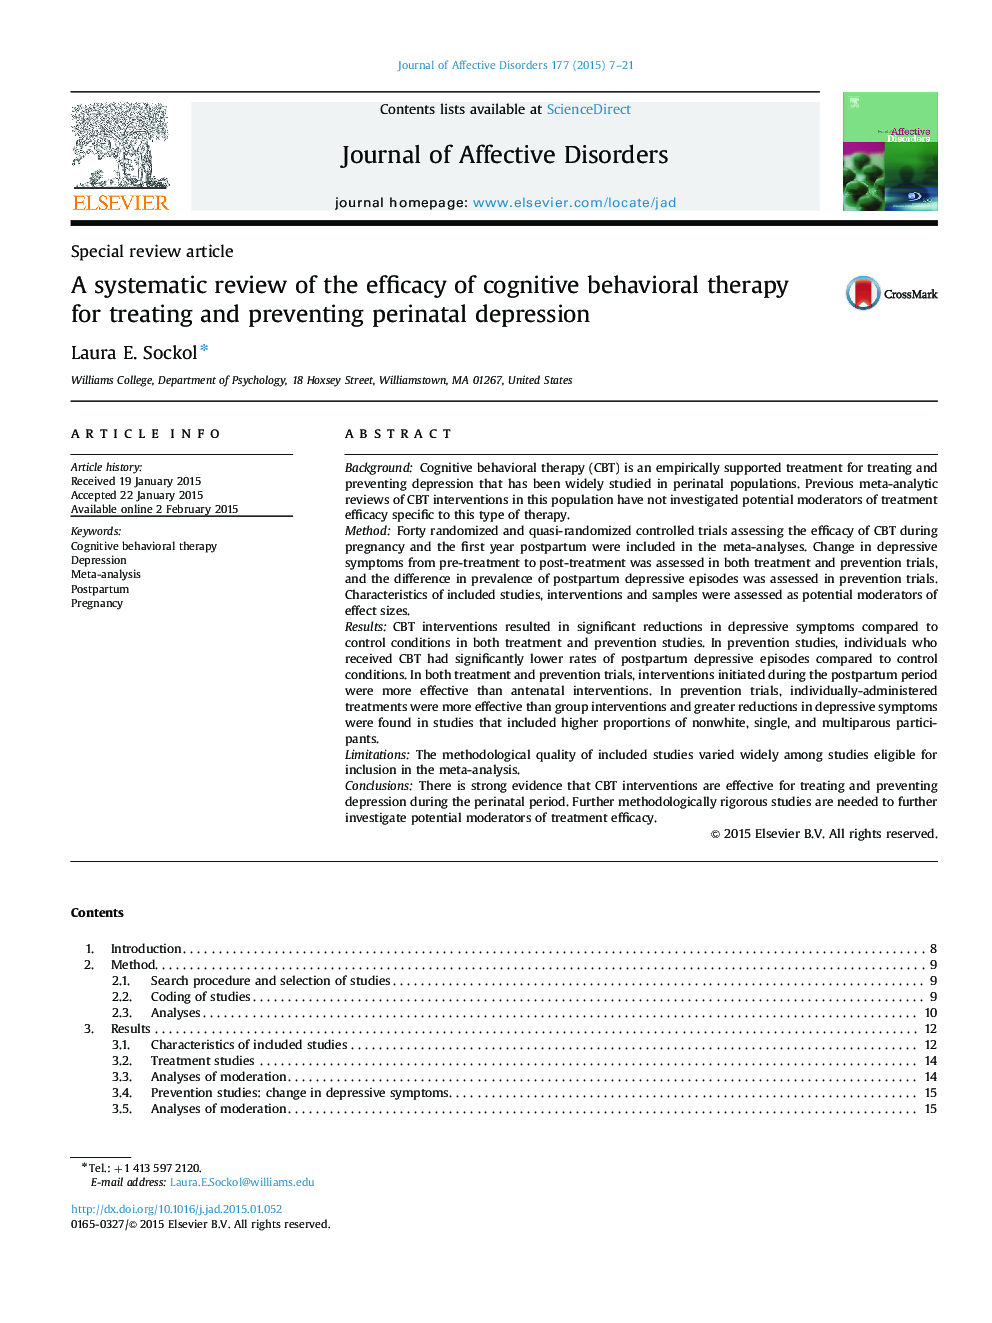 بررسی سیستماتیک اثربخشی درمان شناختی رفتاری برای درمان و پیشگیری از افسردگی پرناتال 